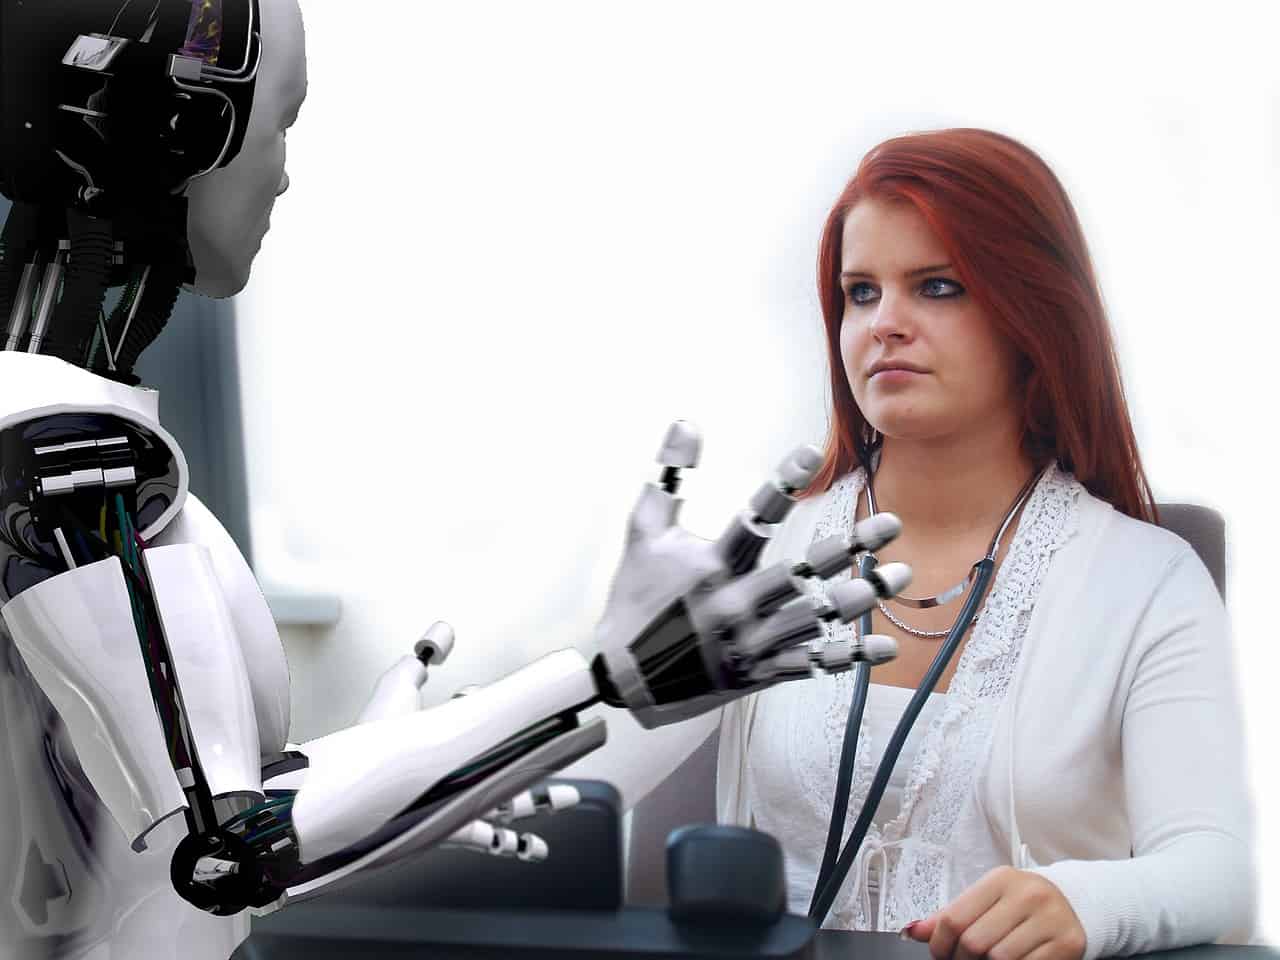 Robots kunnen je mentaal ondersteunen op werk - als ze er maar goed uitzien